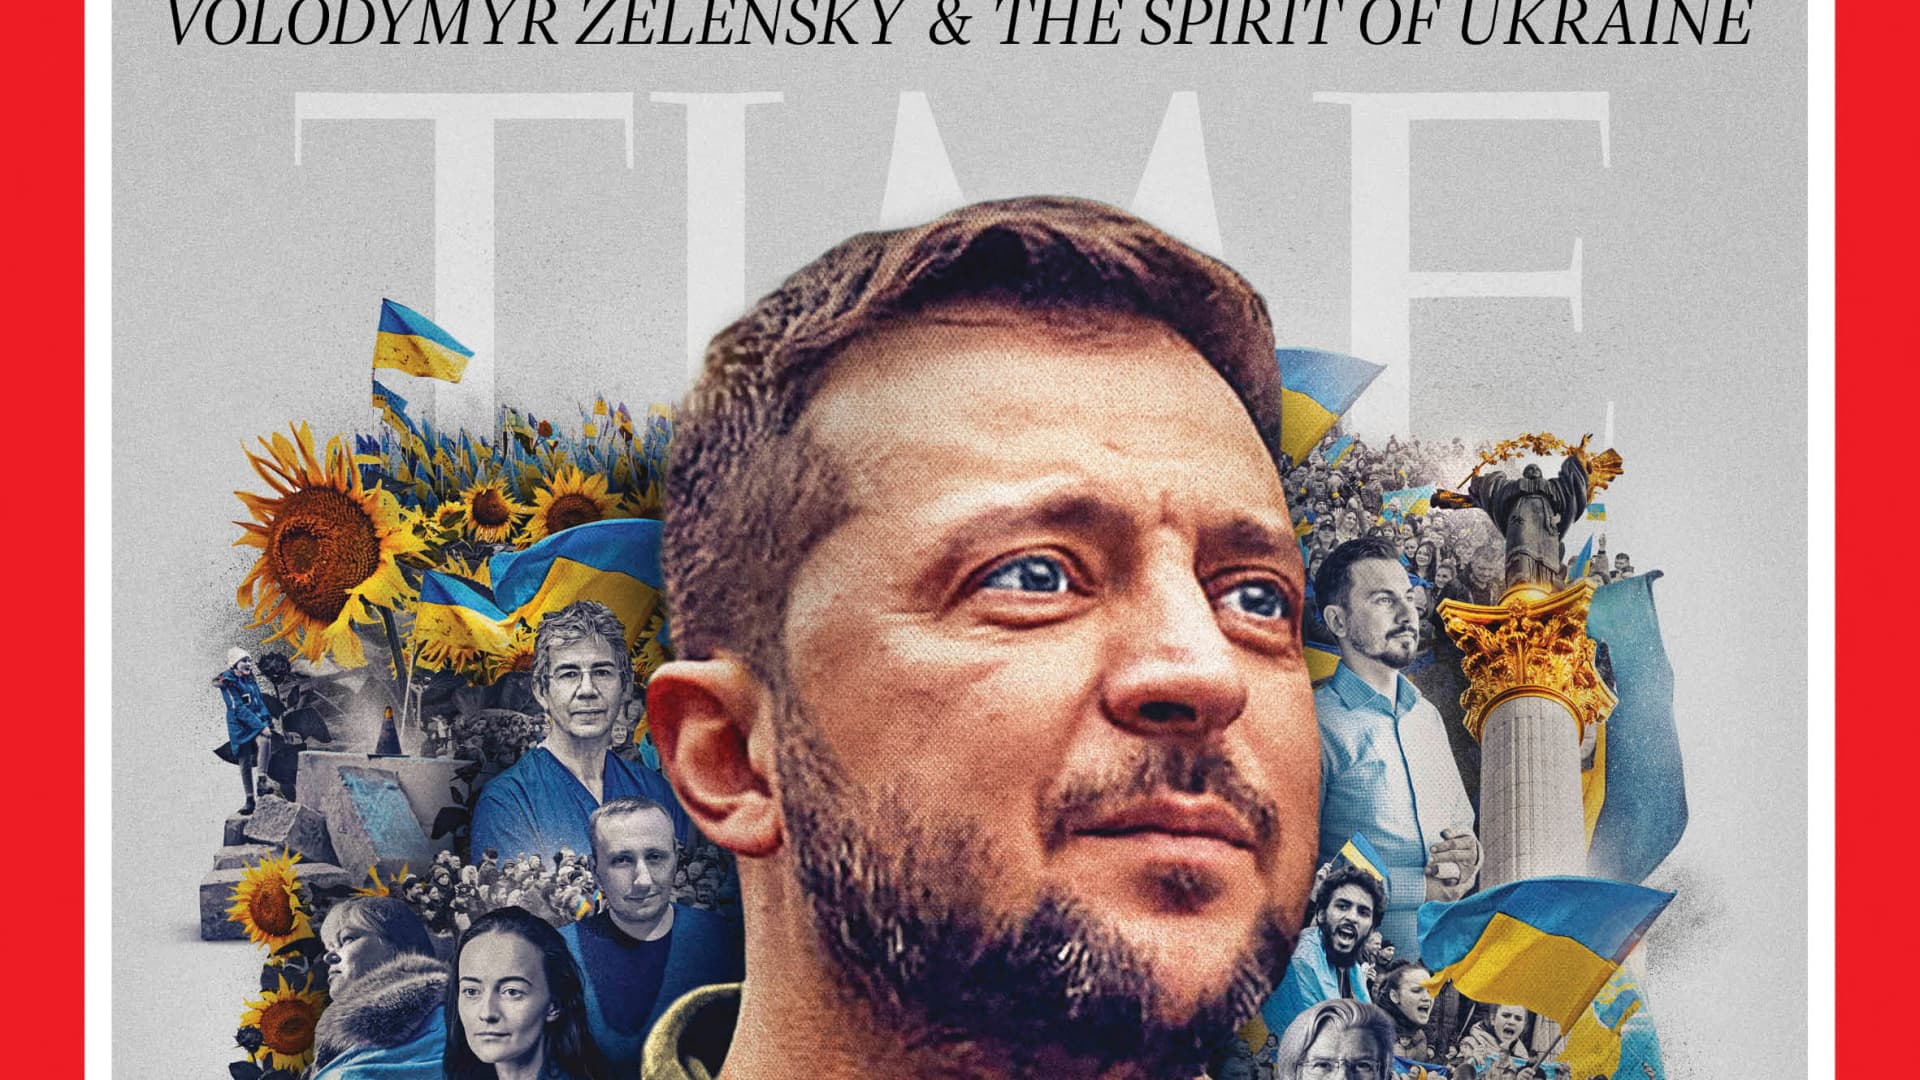 Ukraine's President Volodymyr Zelenskyy on the cover of Time Magazine's 2022 